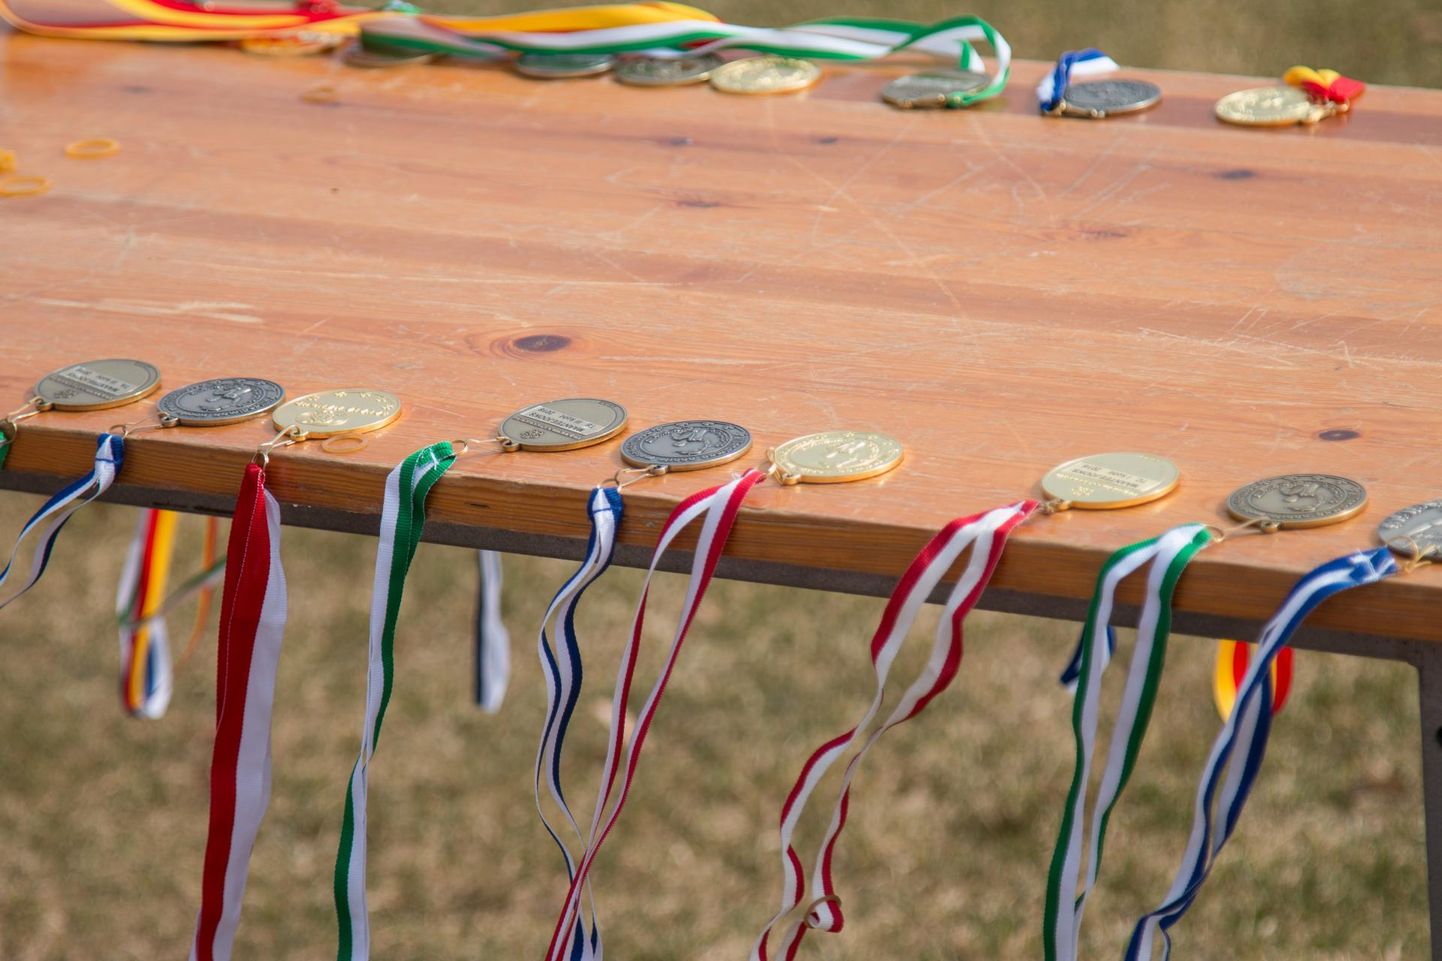 Kitzbergi gümnaasiumi staadionil jagatakse nädalavahetusel Karksi-Nuia mängude parimatele medaleid.